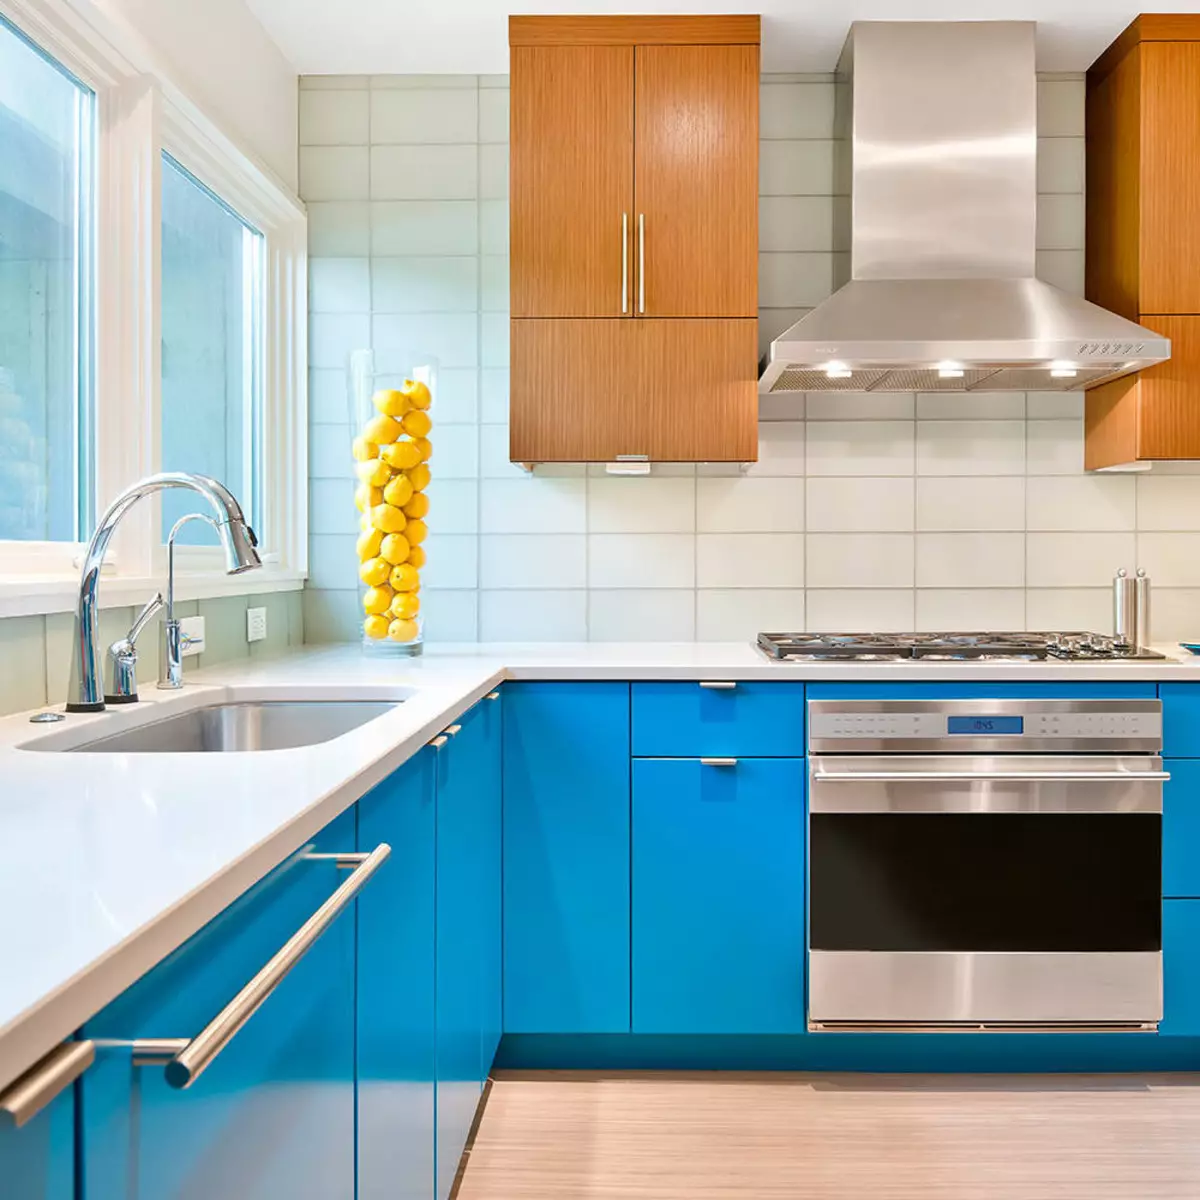 Cucina bianca-blu (64 foto): Caratteristiche dell'auricolare della cucina in colore bianco-blu per la cucina Interior design, accenti sulle pareti in colori simili 9393_22